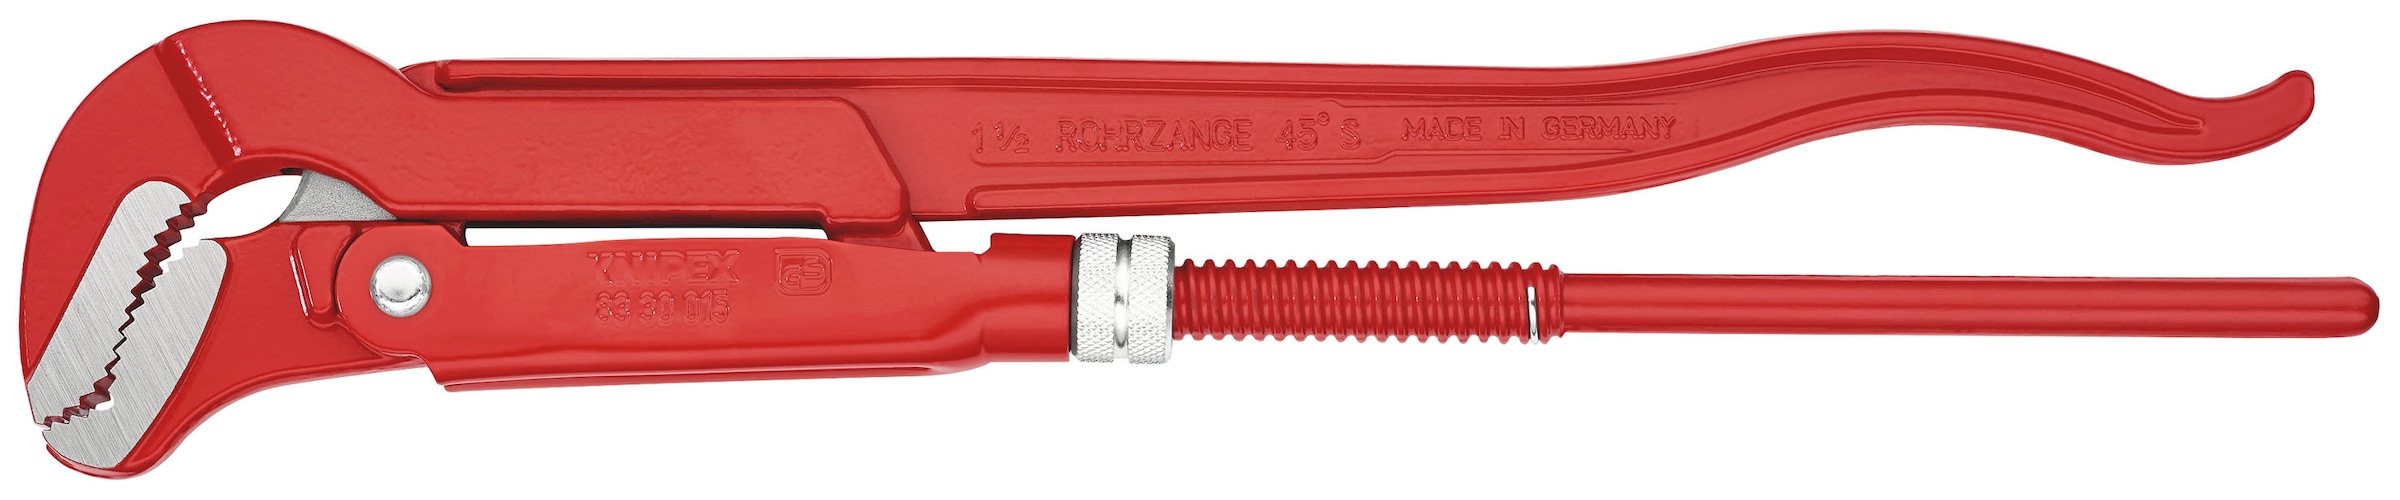 Knipex Rohrzange "83 30 015 S-Maul", (1 tlg.), rot pulverbeschichtet 420 mm